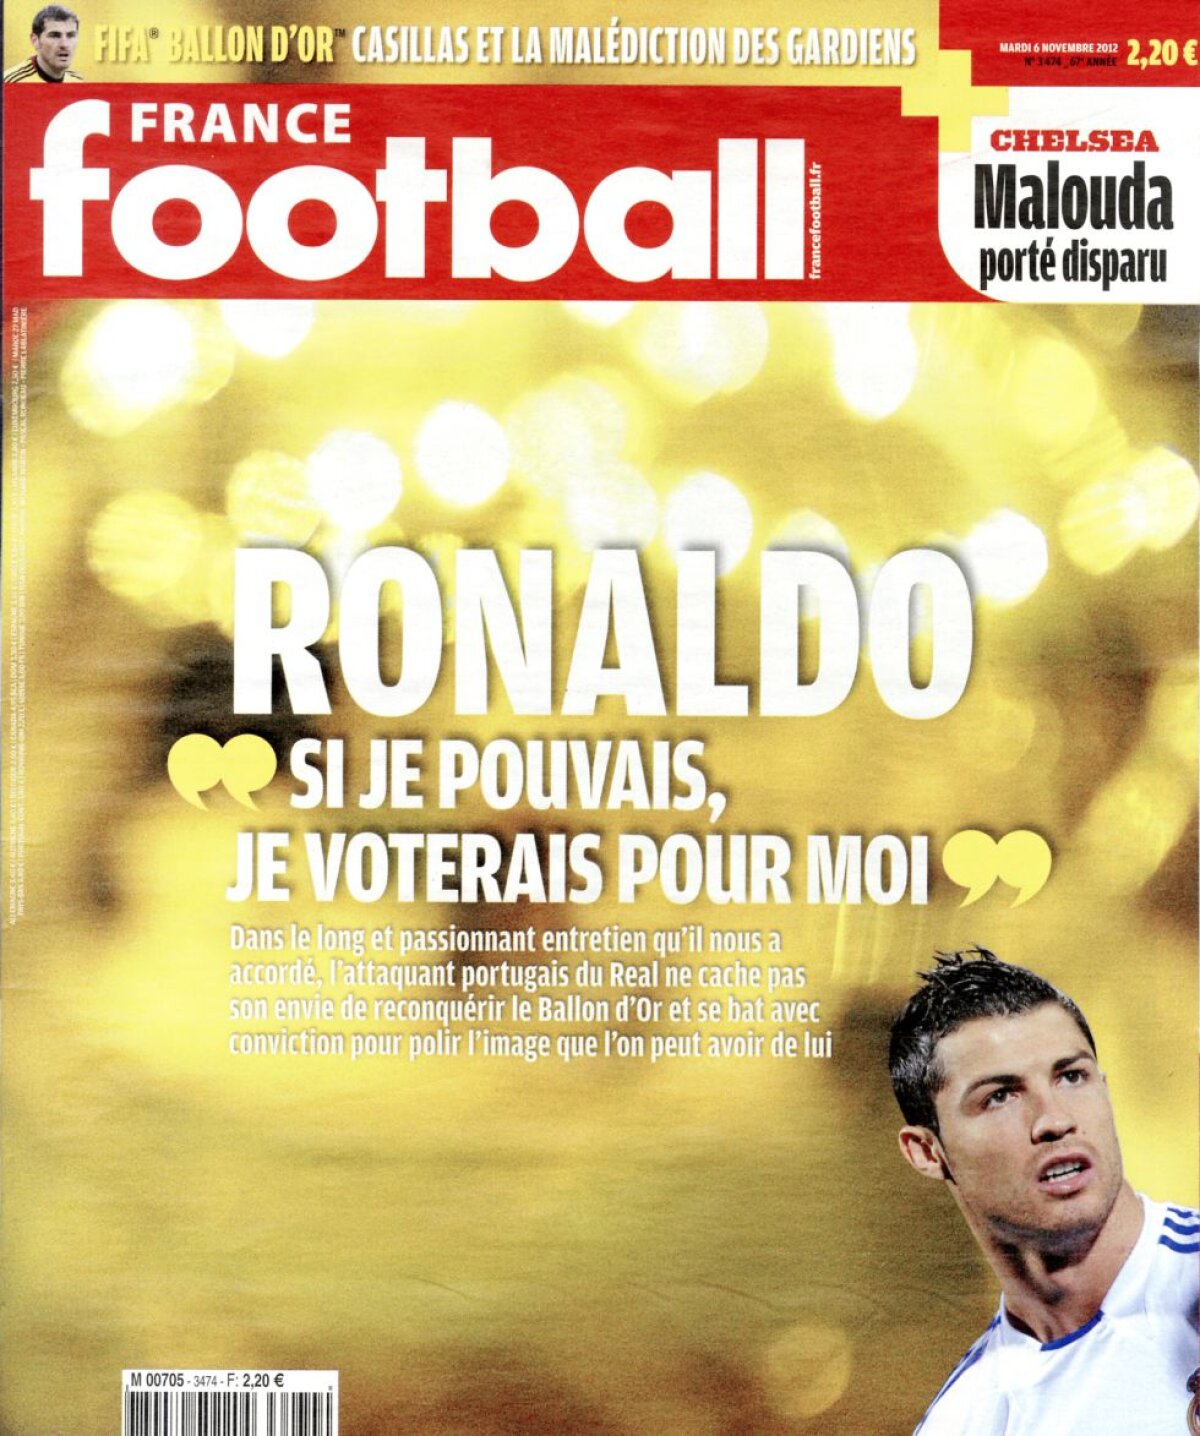 Cristiano Ronaldo: "Nu sînt arogant, oamenii au o părere greşită" » De ce e supărat pe cei de la France Football şi ce legătură are Messi cu asta